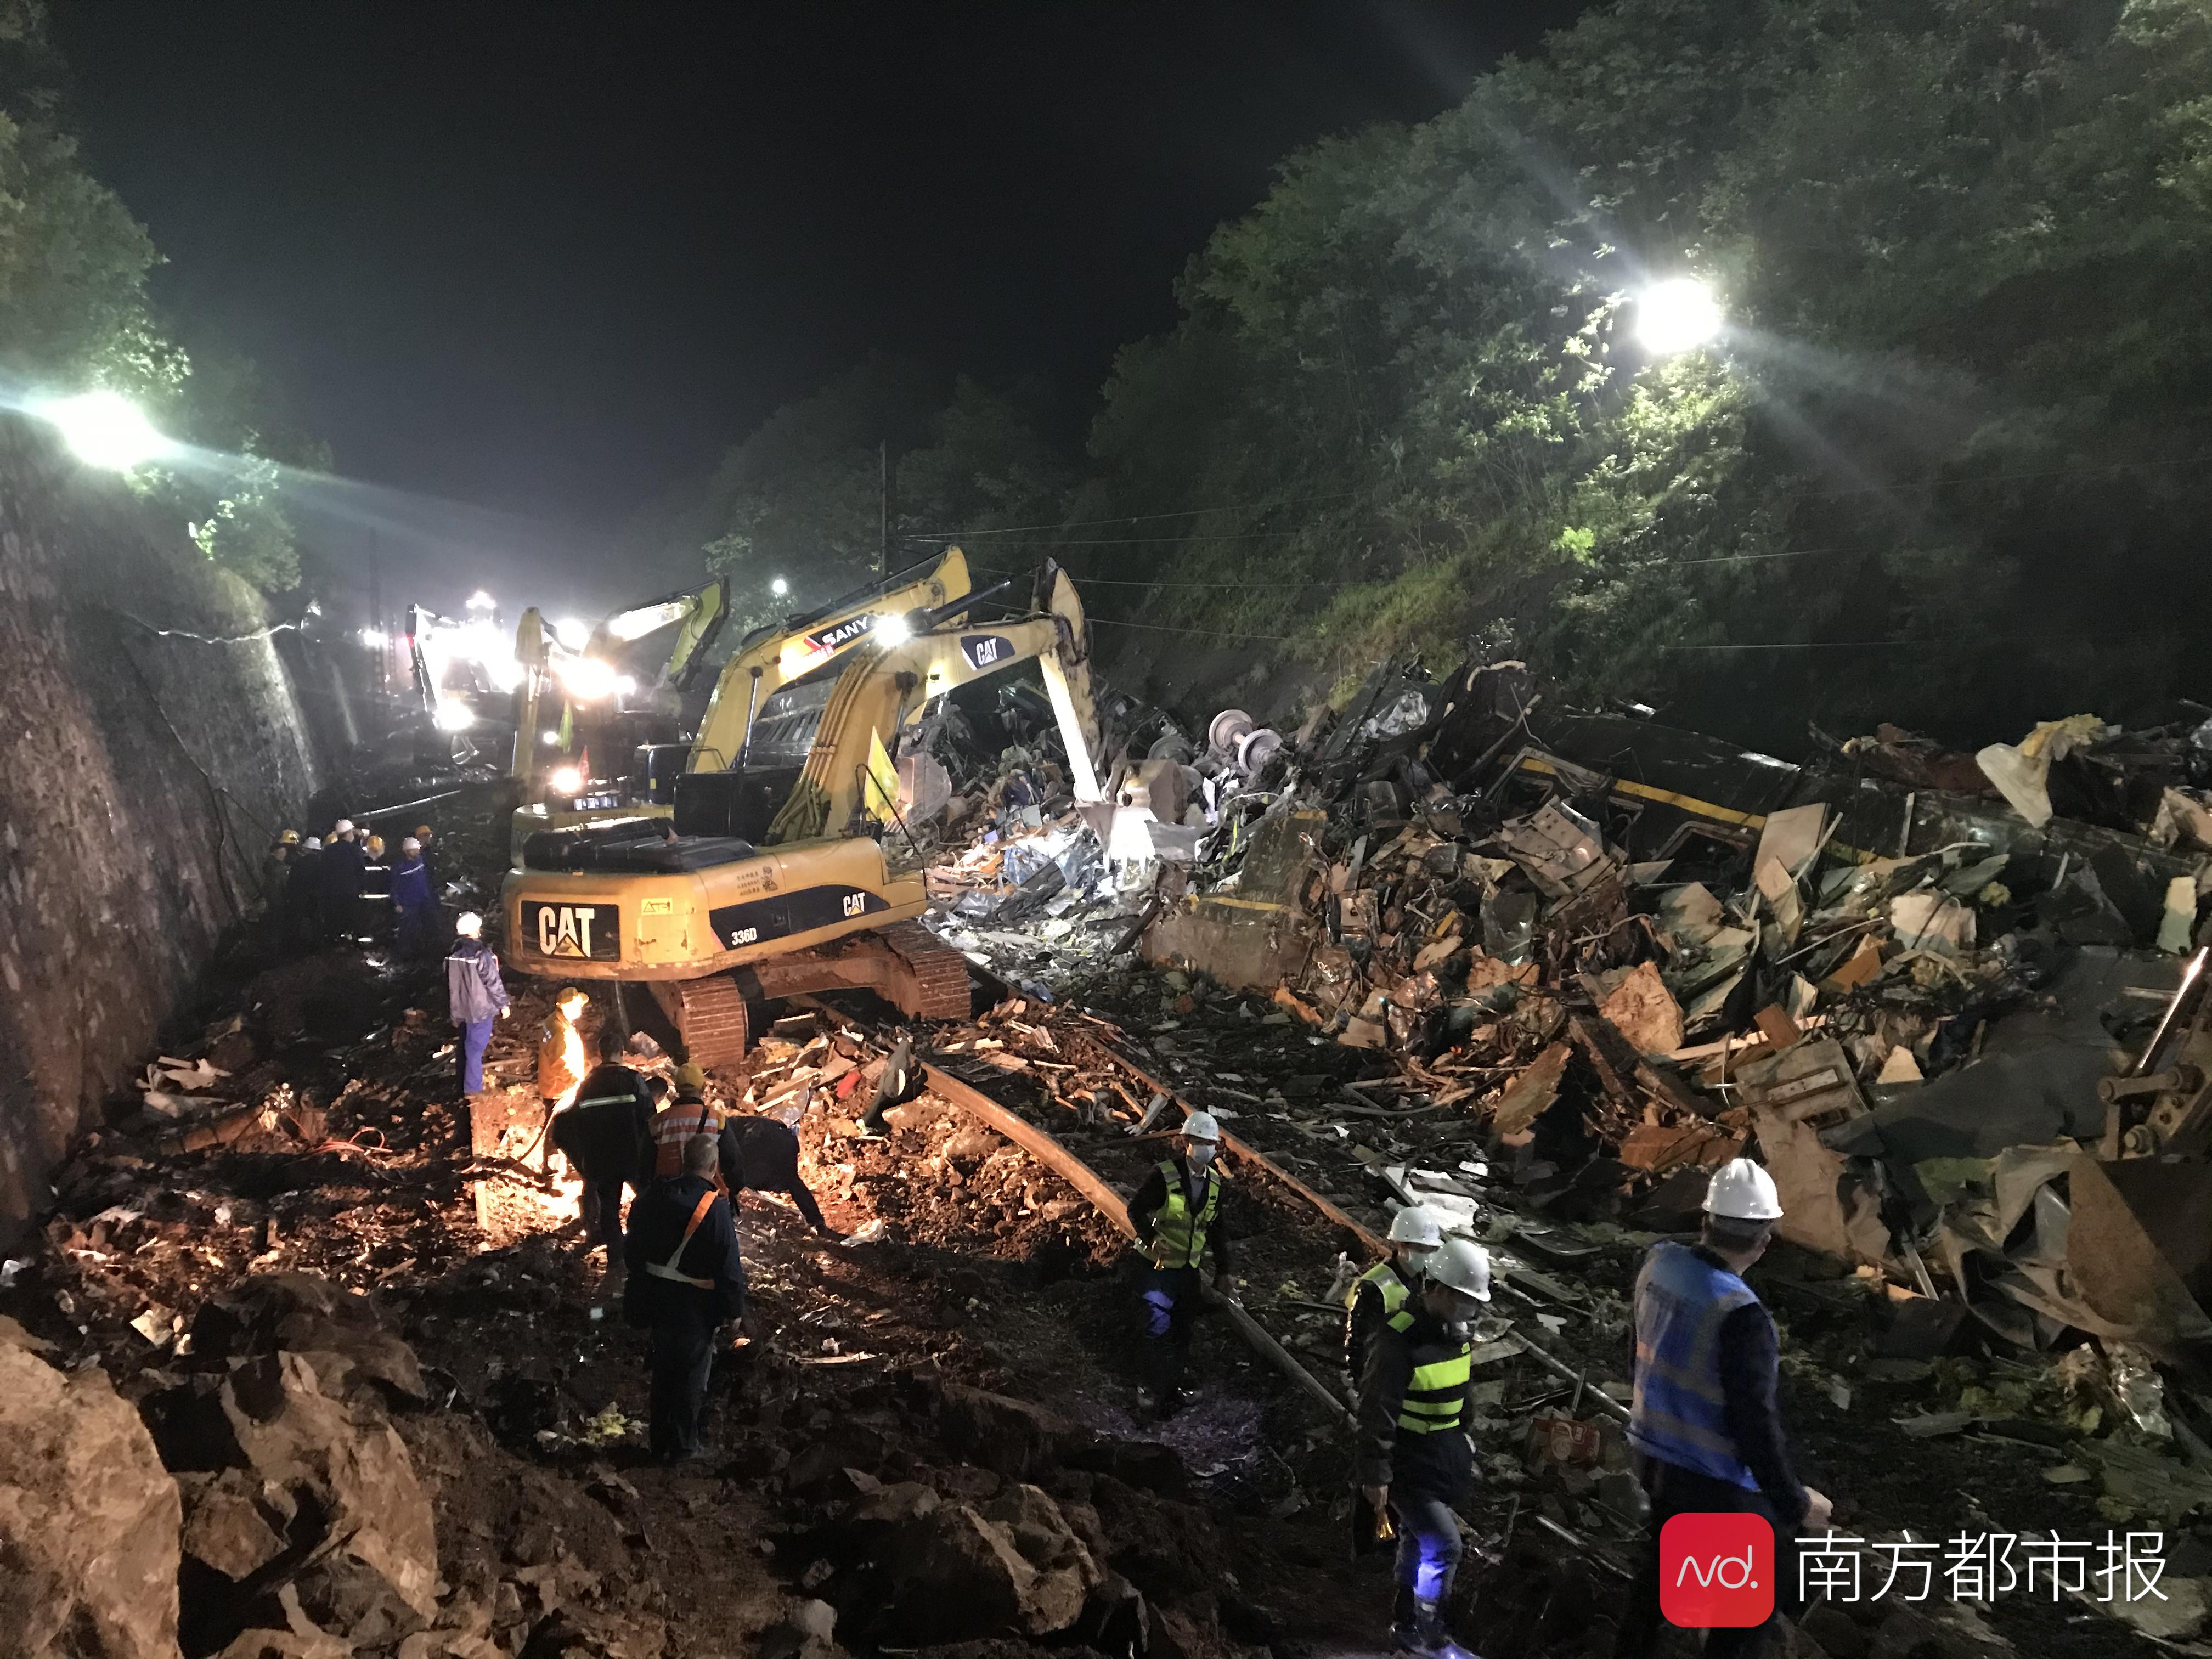 救援现场图集!济南至广州列车郴州脱轨,多台挖掘机连夜清理中